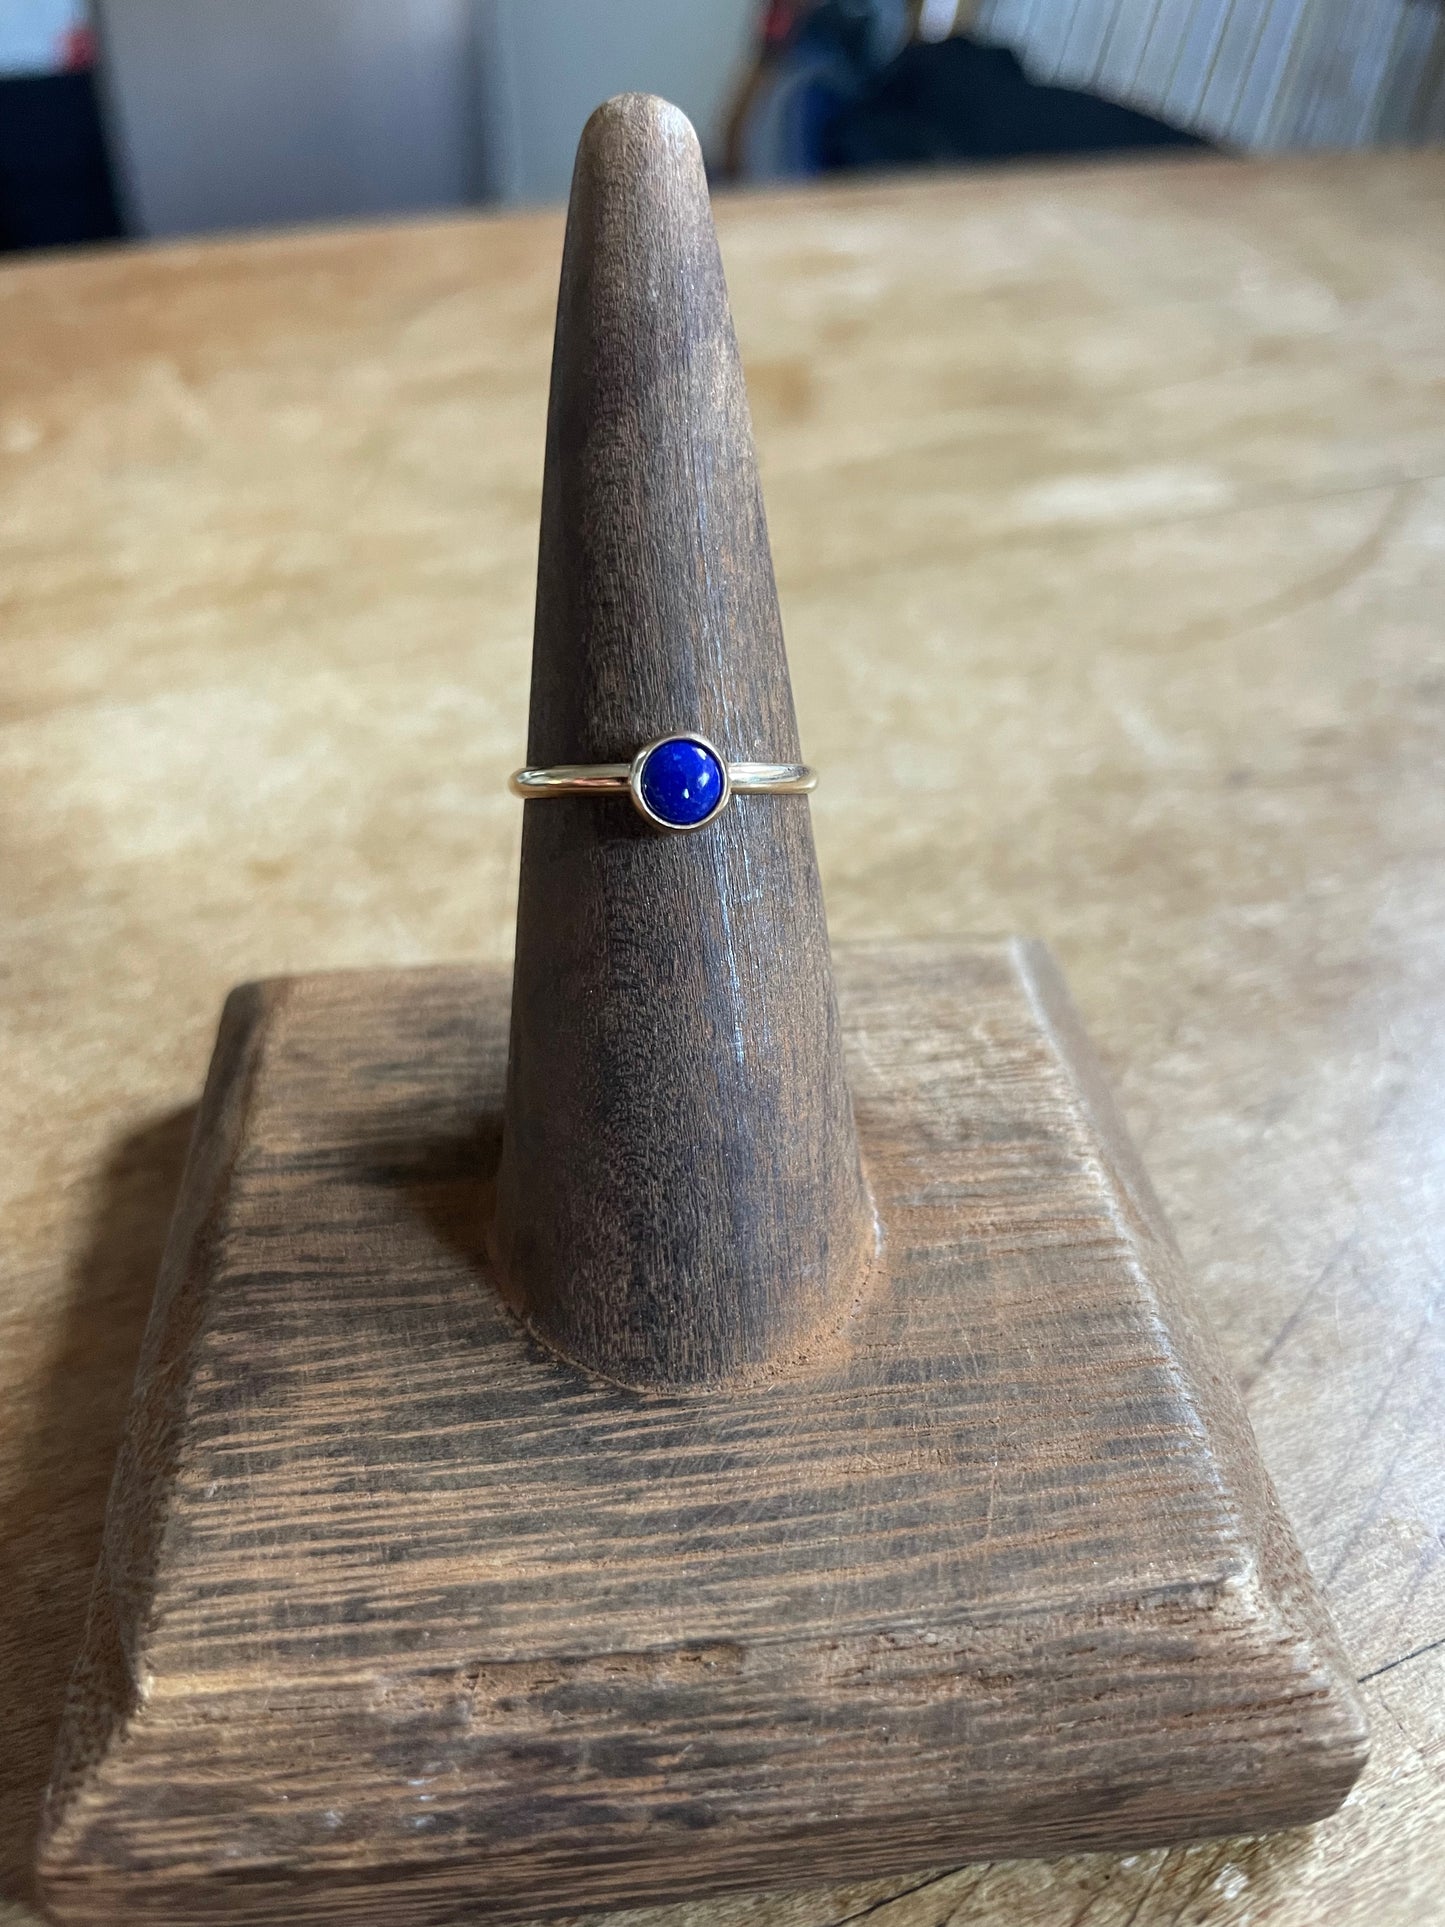 14K Gold, Lapis Lazuli Ring, 14K Gold and Lapis Ring, Handmade Ring, Lapis Ring, Hand Made Gold and Gemstone Ring